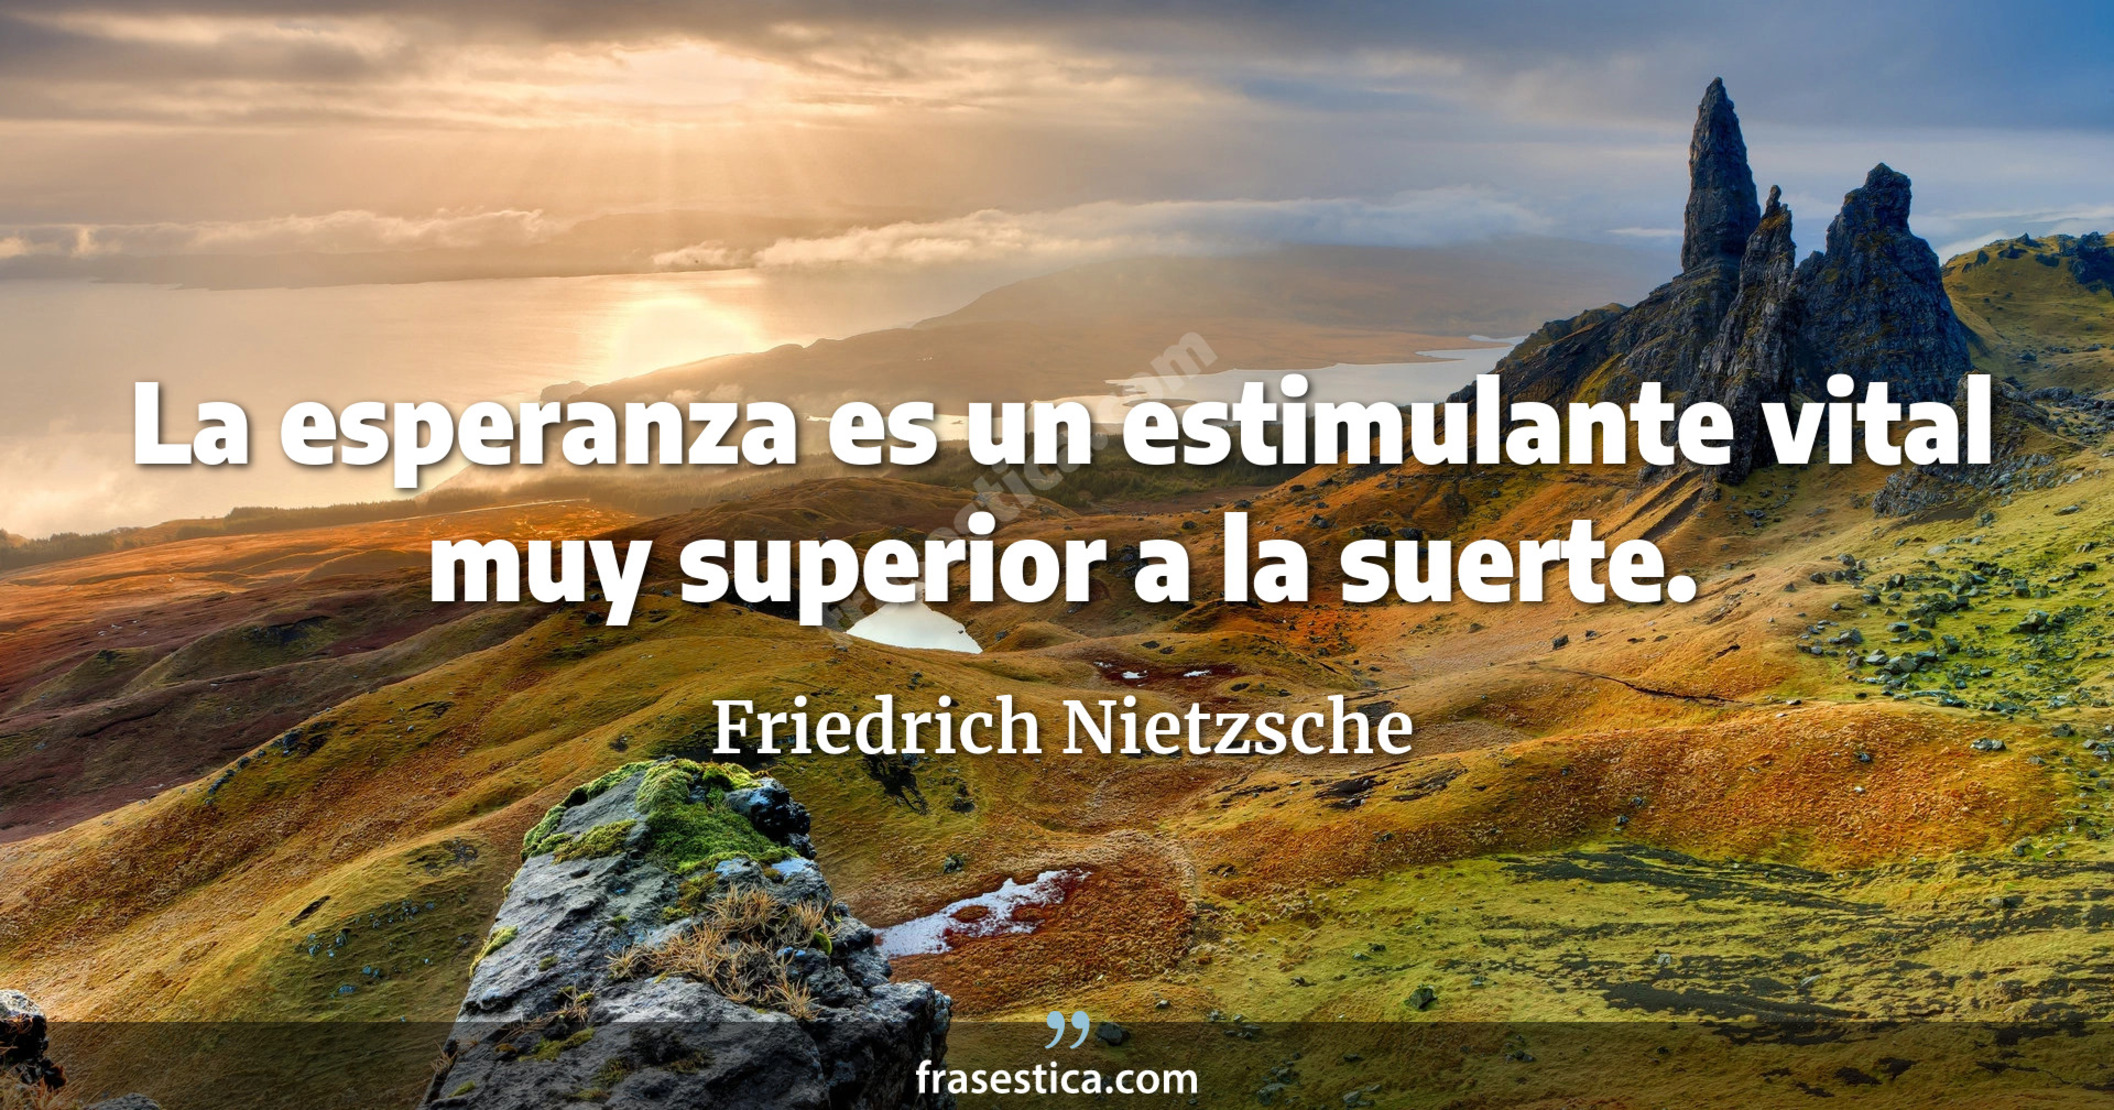 La esperanza es un estimulante vital muy superior a la suerte. - Friedrich Nietzsche